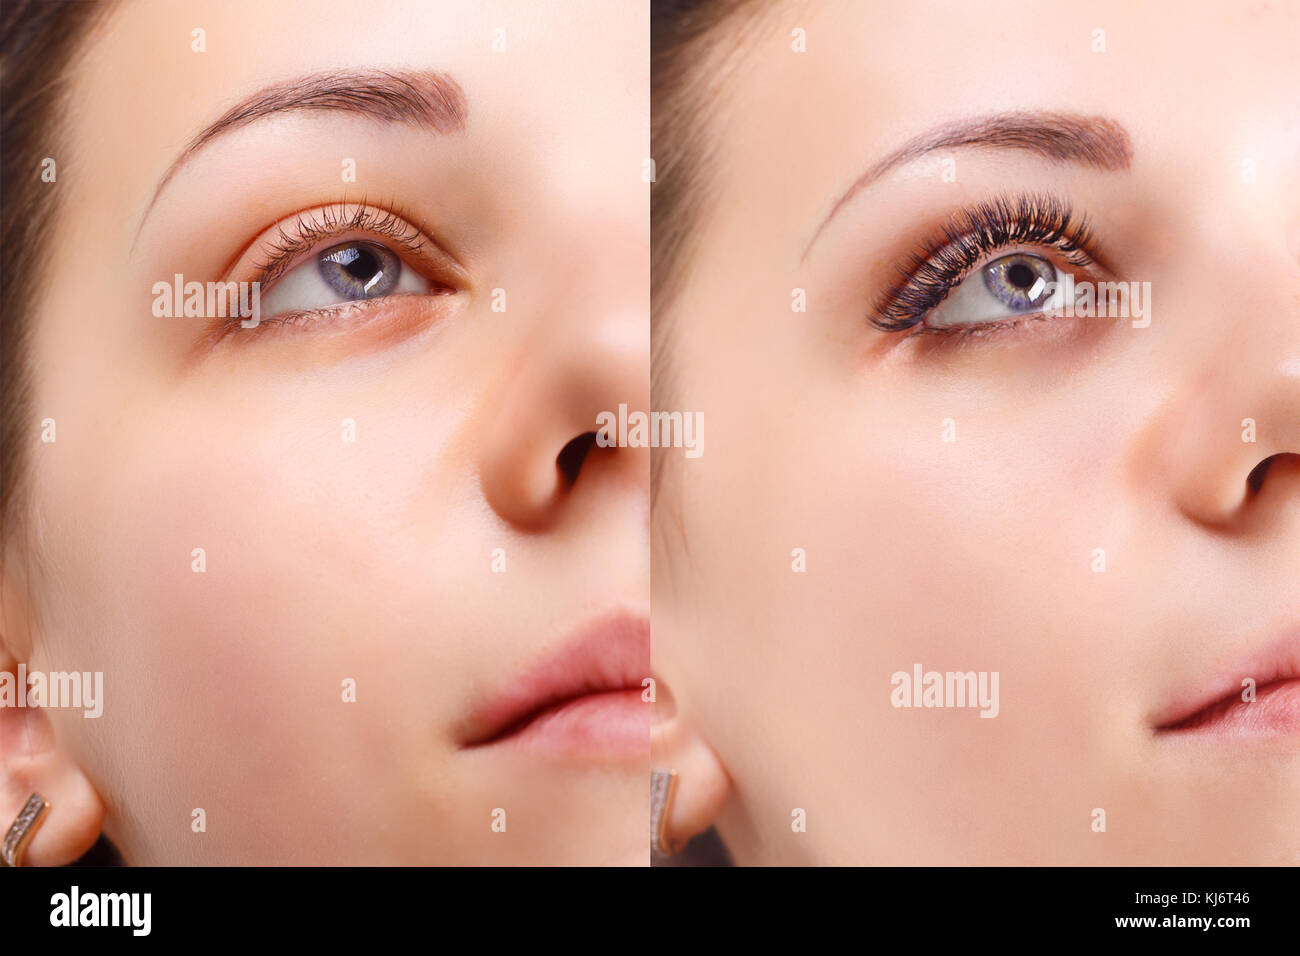 Extension delle ciglia. Confronto degli occhi femmina prima e dopo. Foto Stock